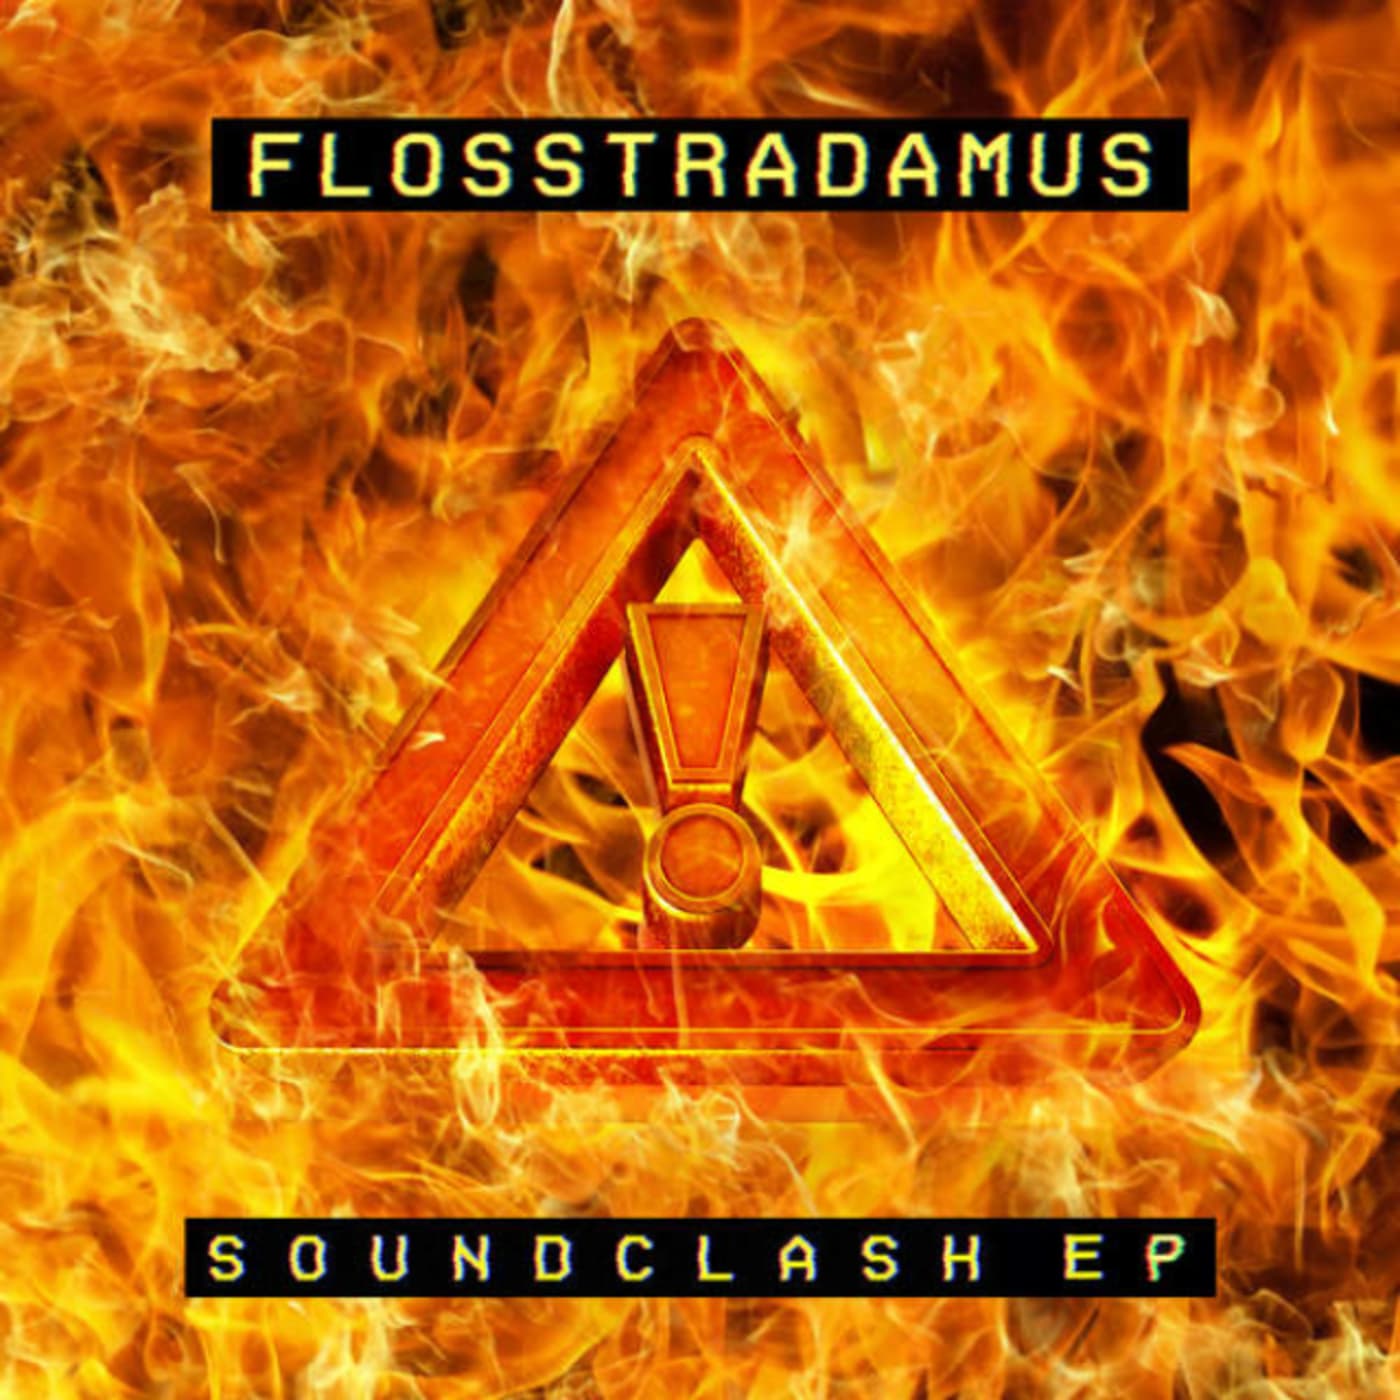 flosstradamus soundclash ep